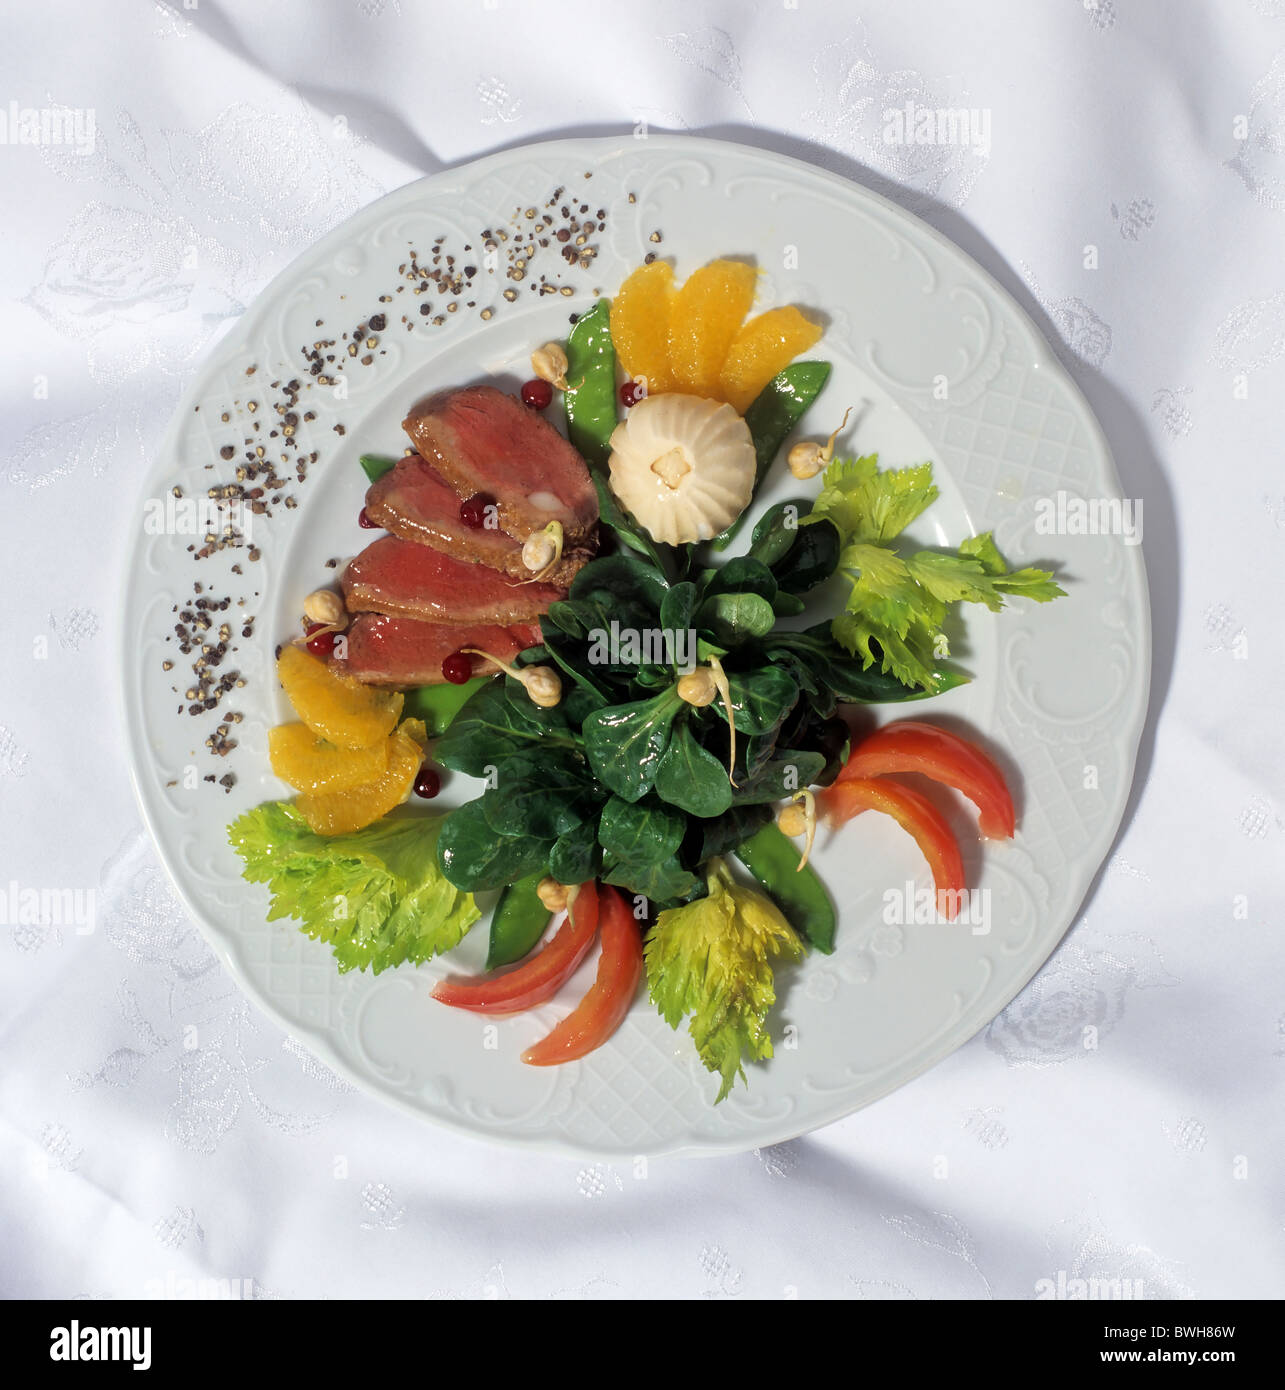 Kalorienarme Gourmet-Gericht À la Haute Cuisine mit zarten Scheiben vom Rinderfilet auf Rucola-Salat Stockfoto